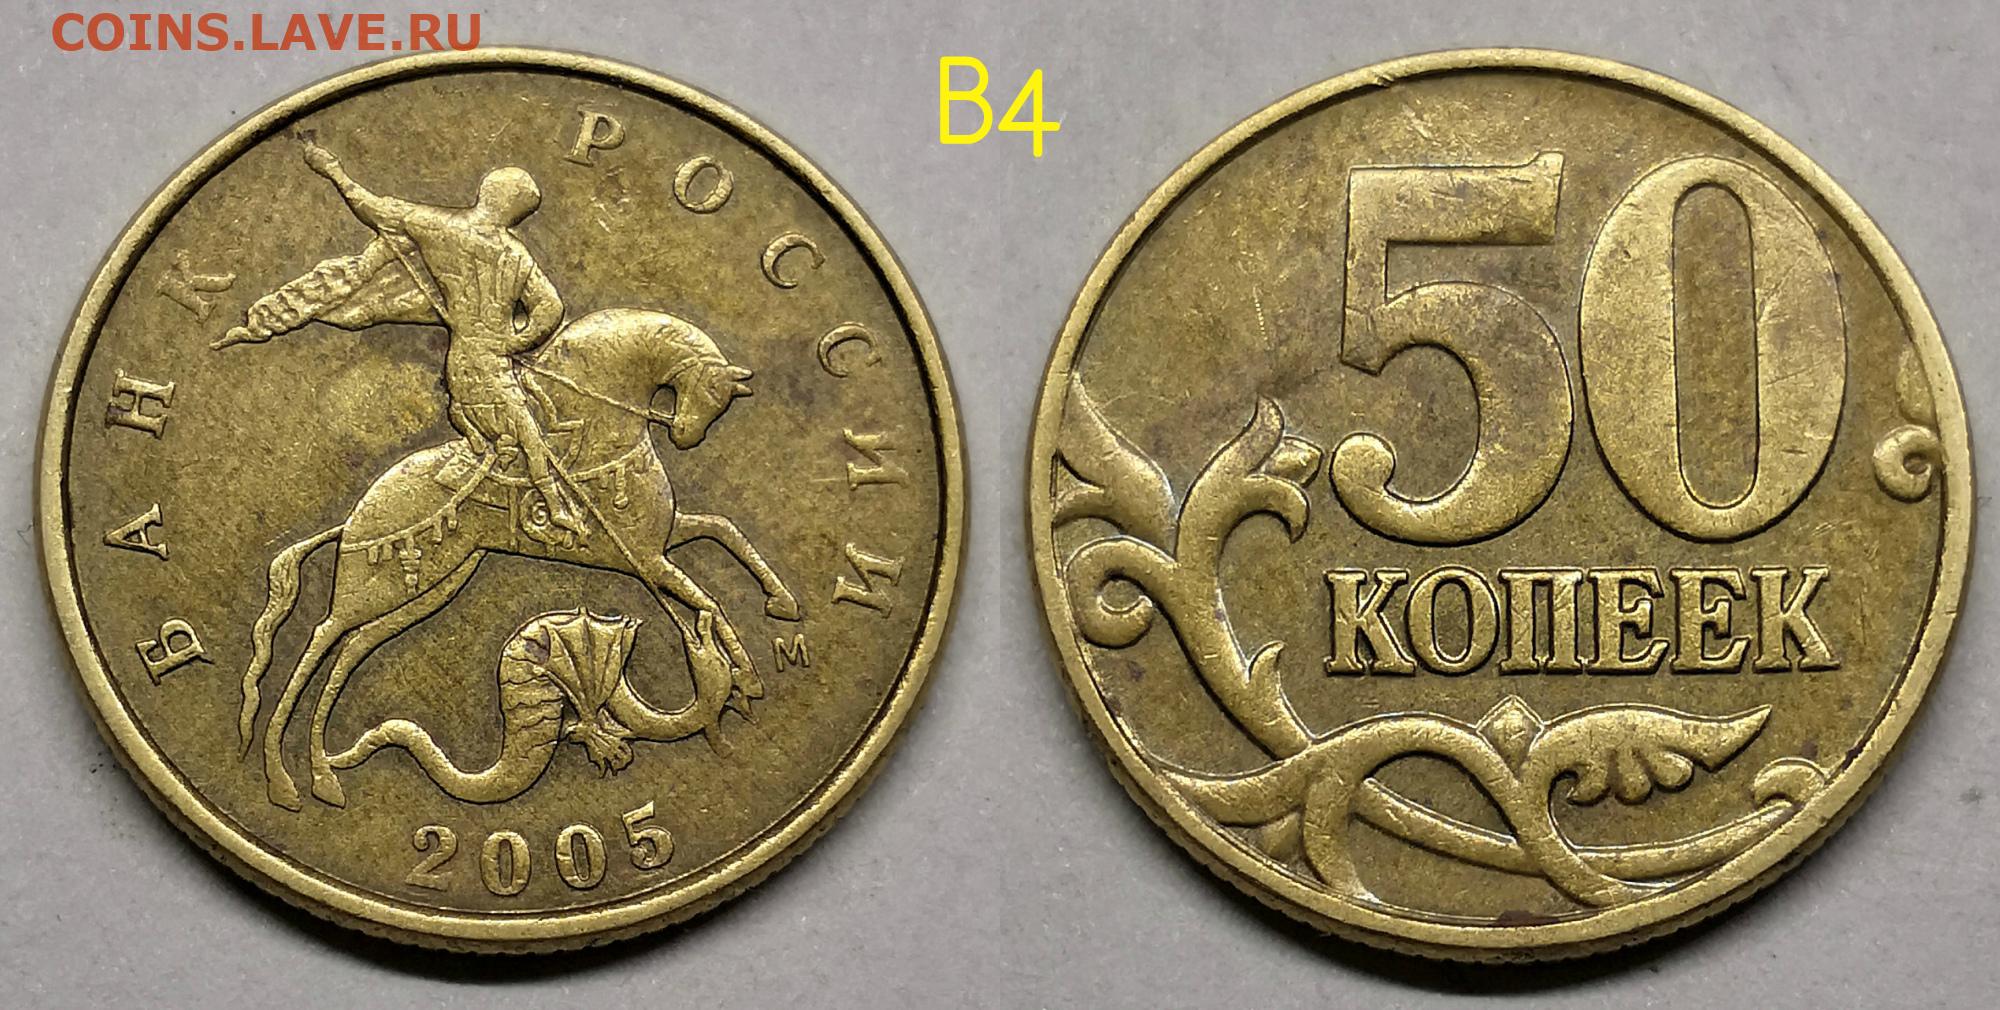 Монеты 10 копеек ММД 2002-